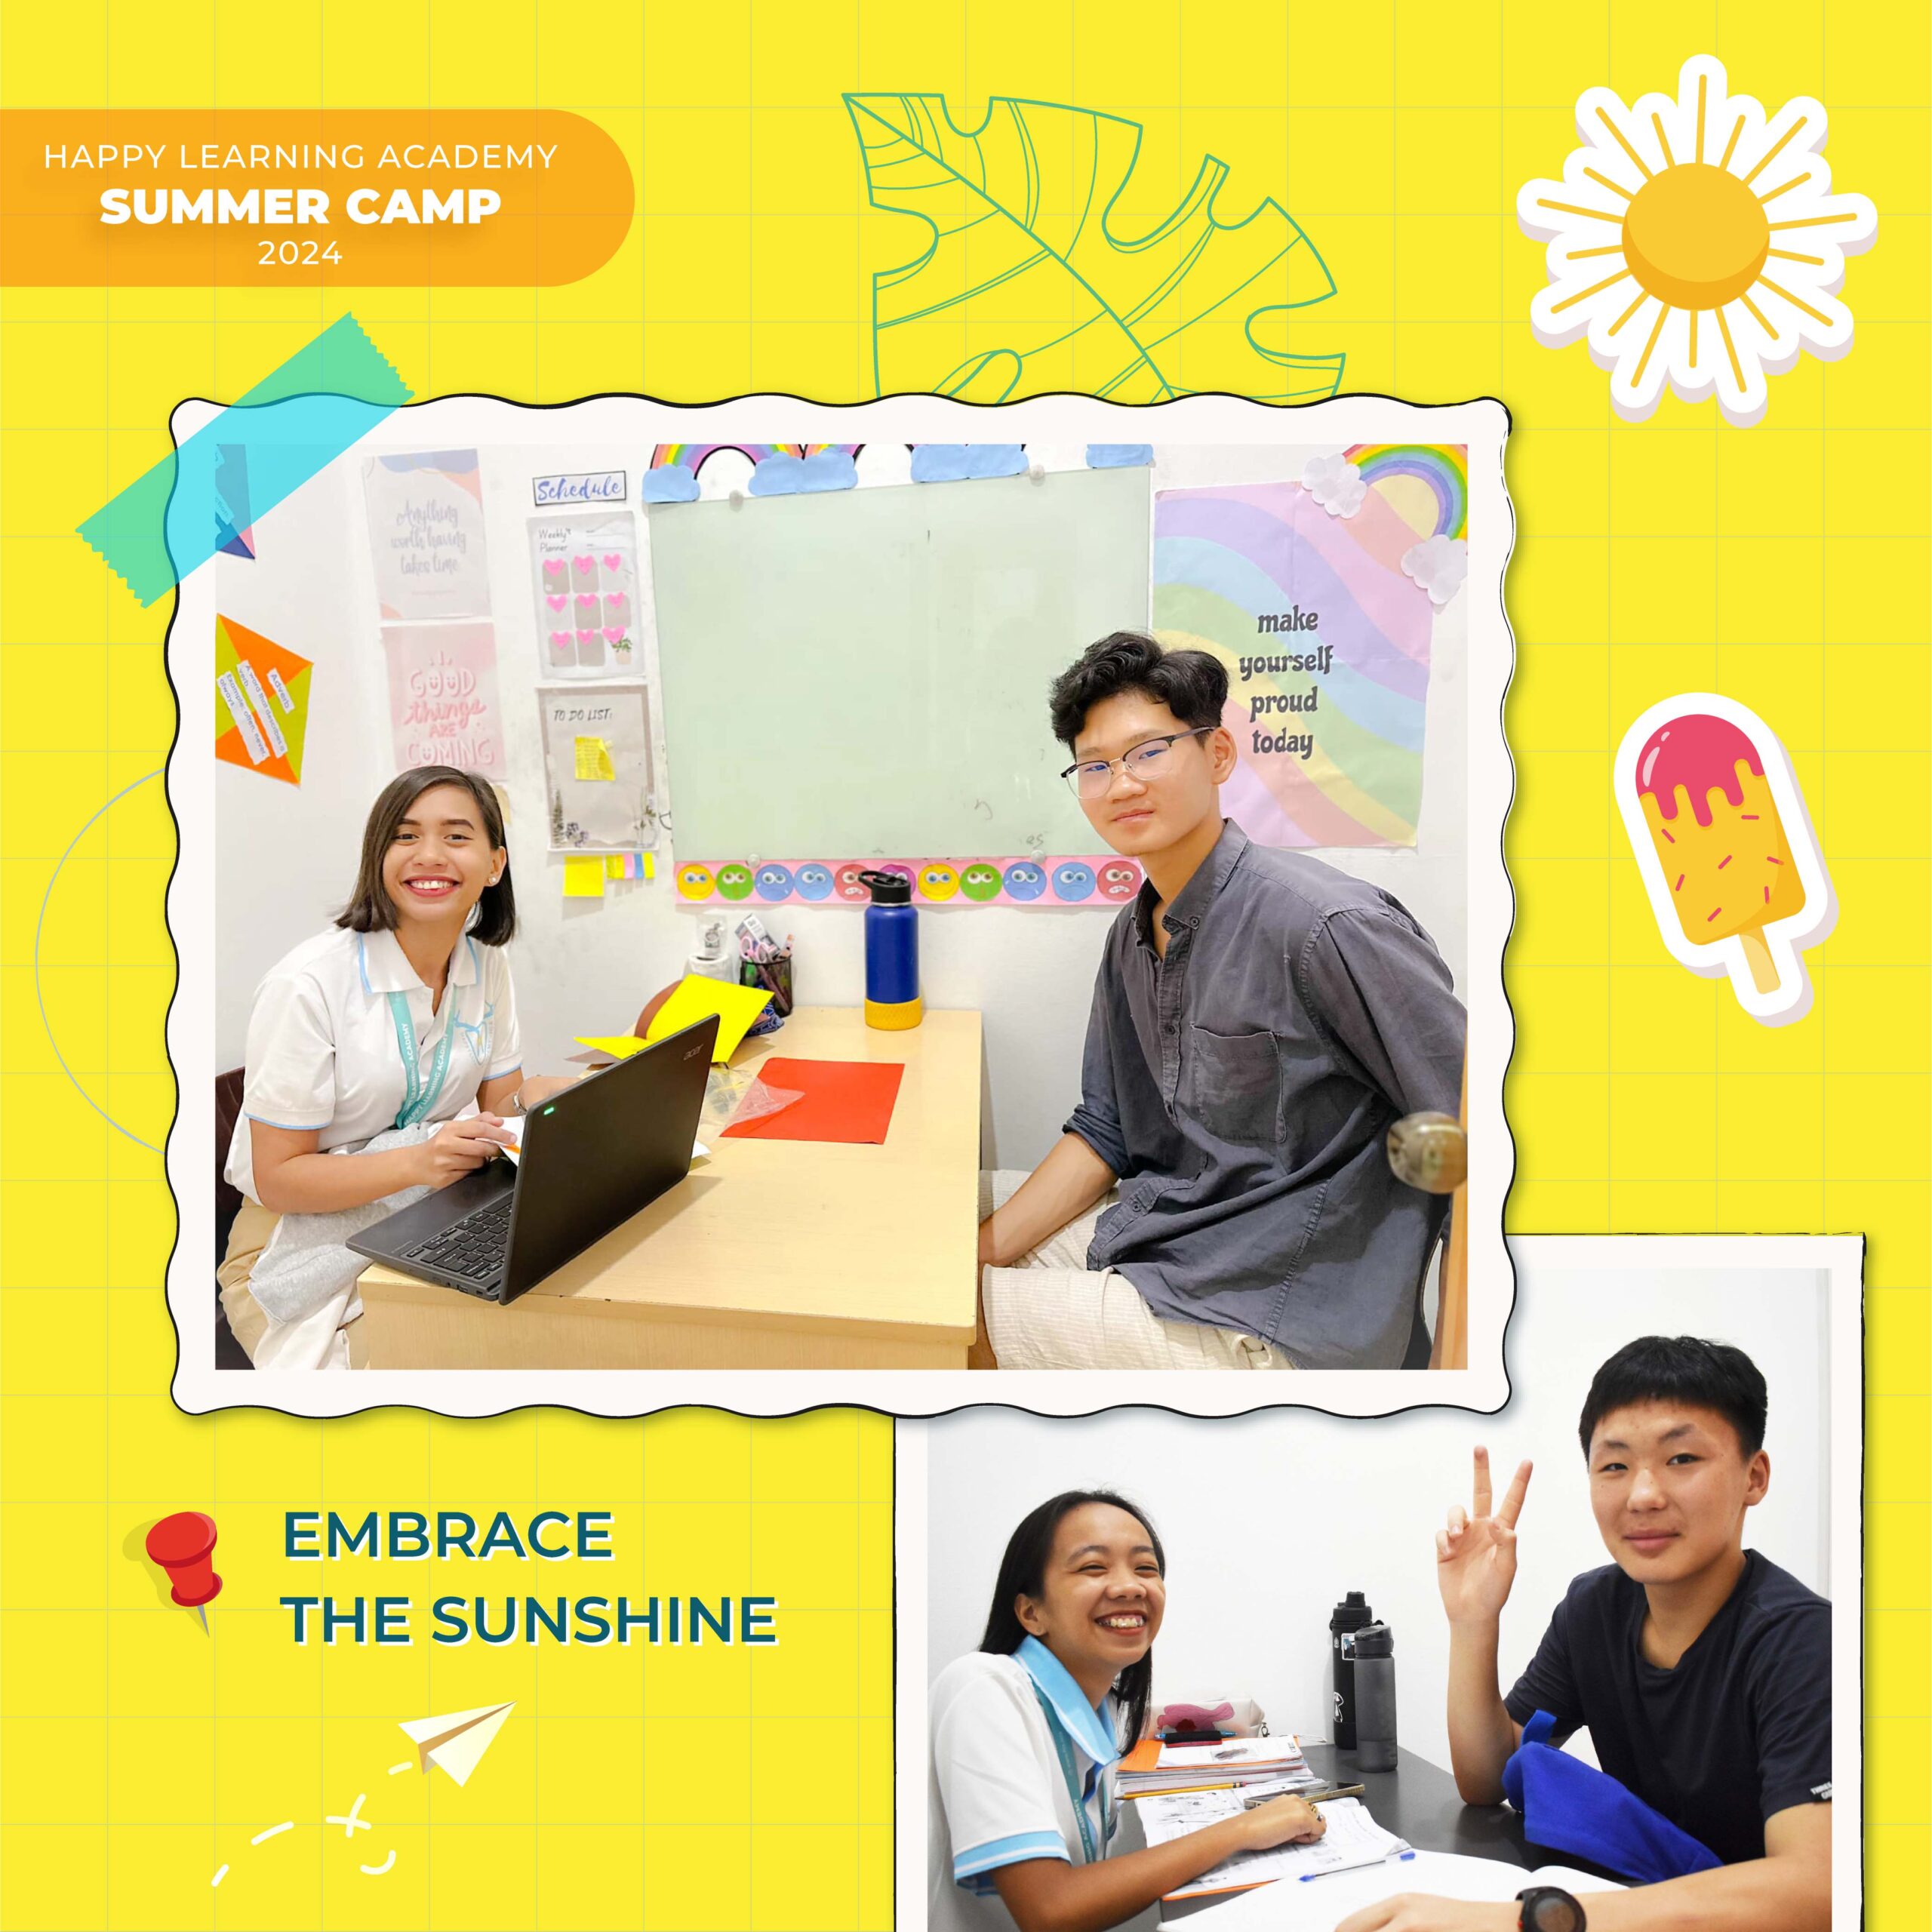 Trại hè tiếng Anh - Du học hè tiếng Anh trở thành món quà tinh thần cho các con vào mỗi mùa hè kết hợp chương trình vừa học tiếng Anh vừa du lịch tại thành phố Cebu - Philippines.